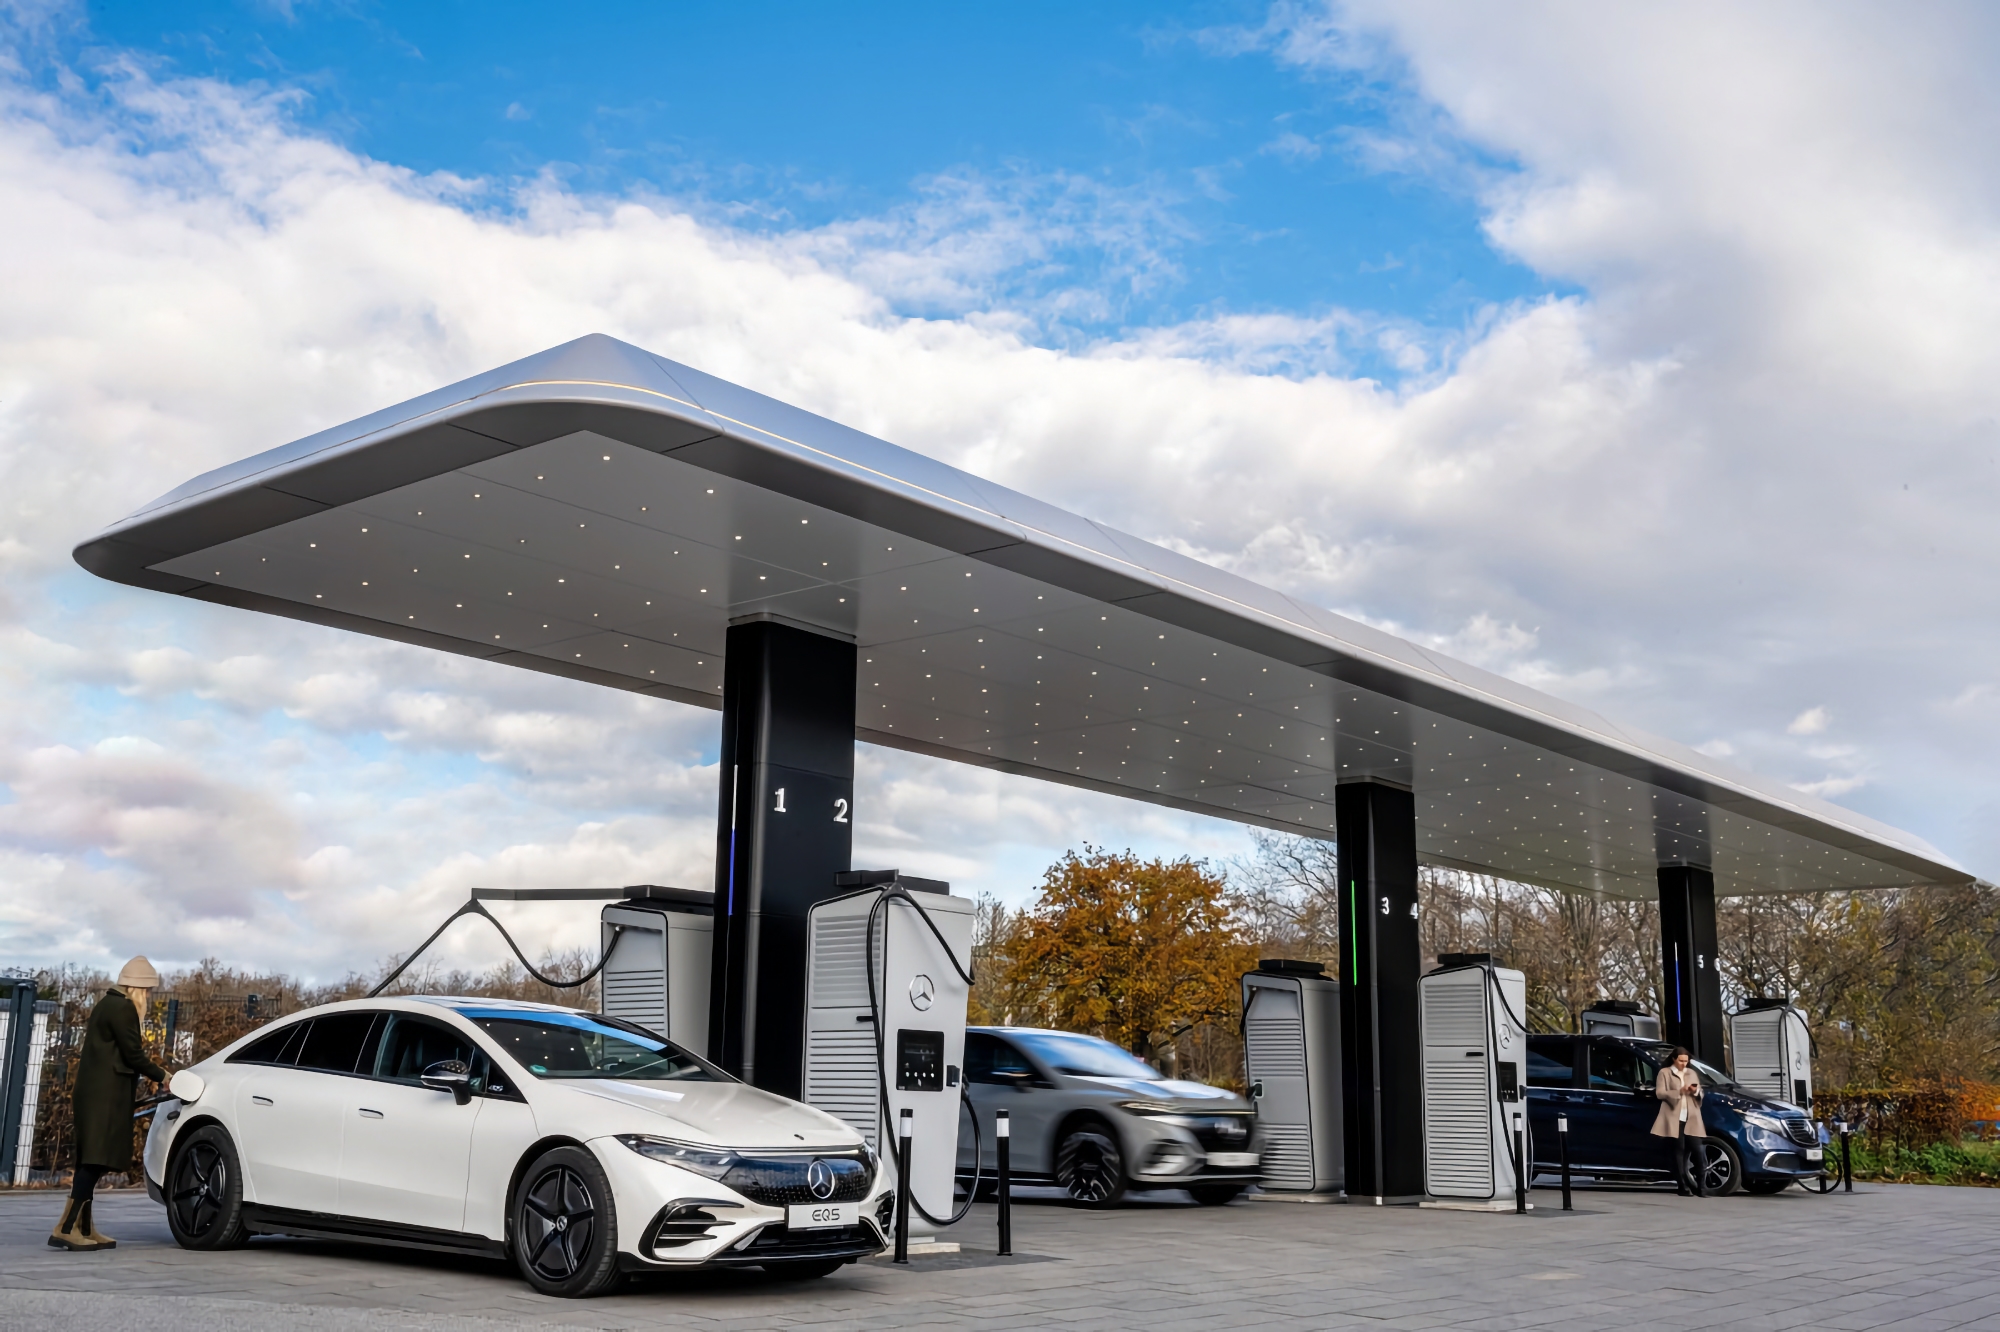 Mercedes ha abierto un centro de marca en Europa con estaciones de recarga para vehículos eléctricos con una capacidad de 300 kW